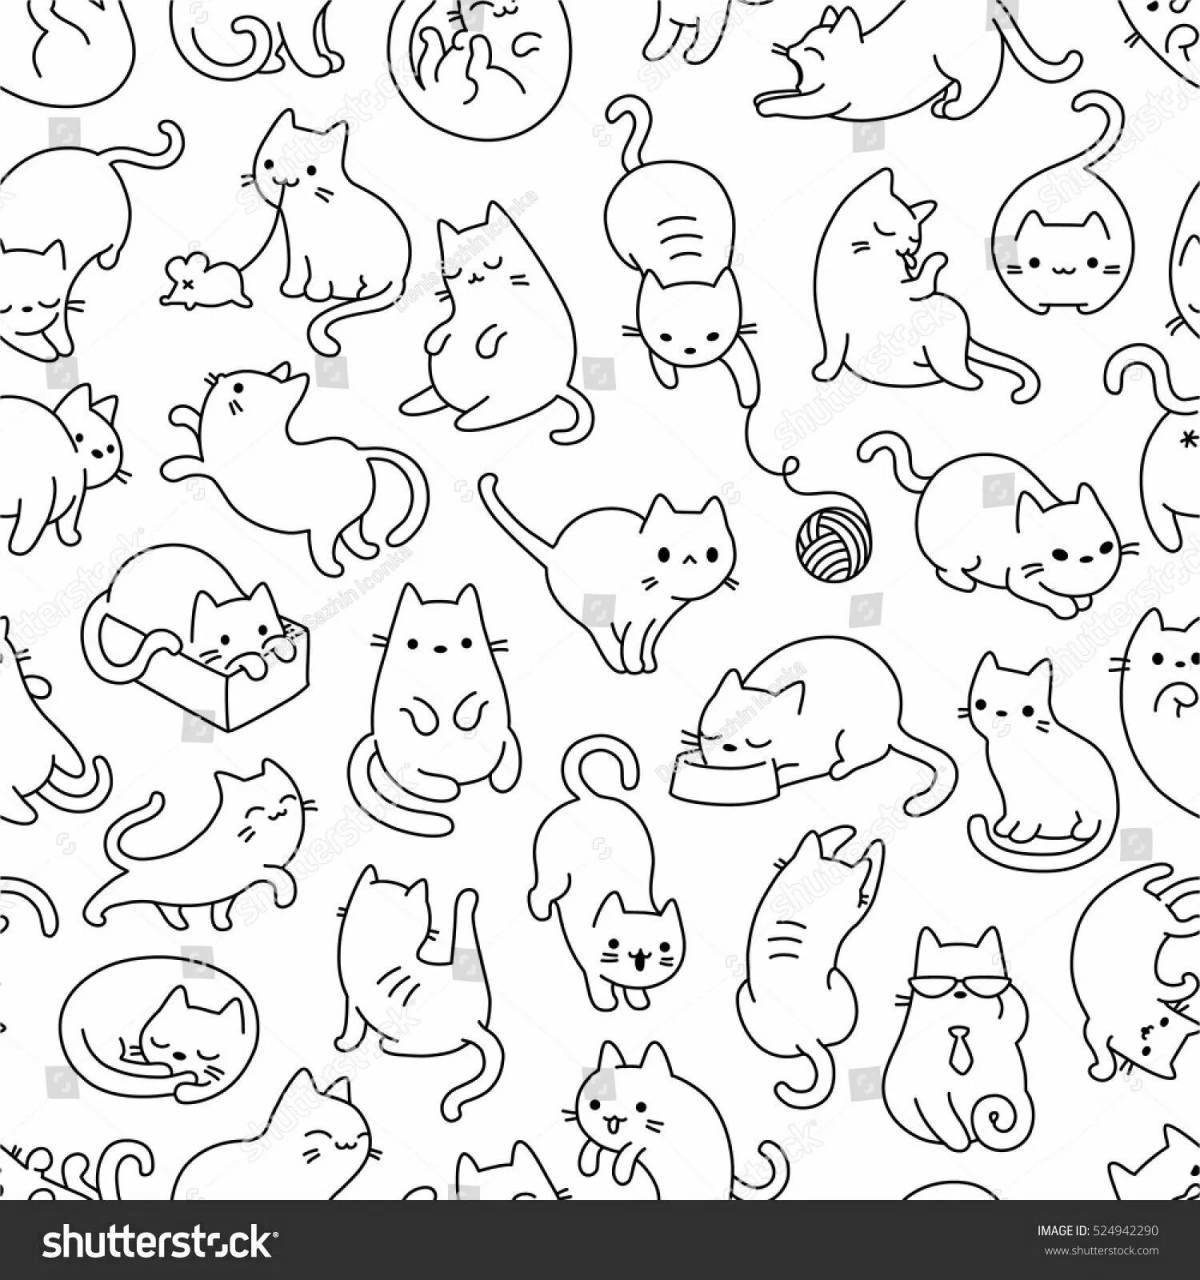 Симпатичные много кошек на одной странице